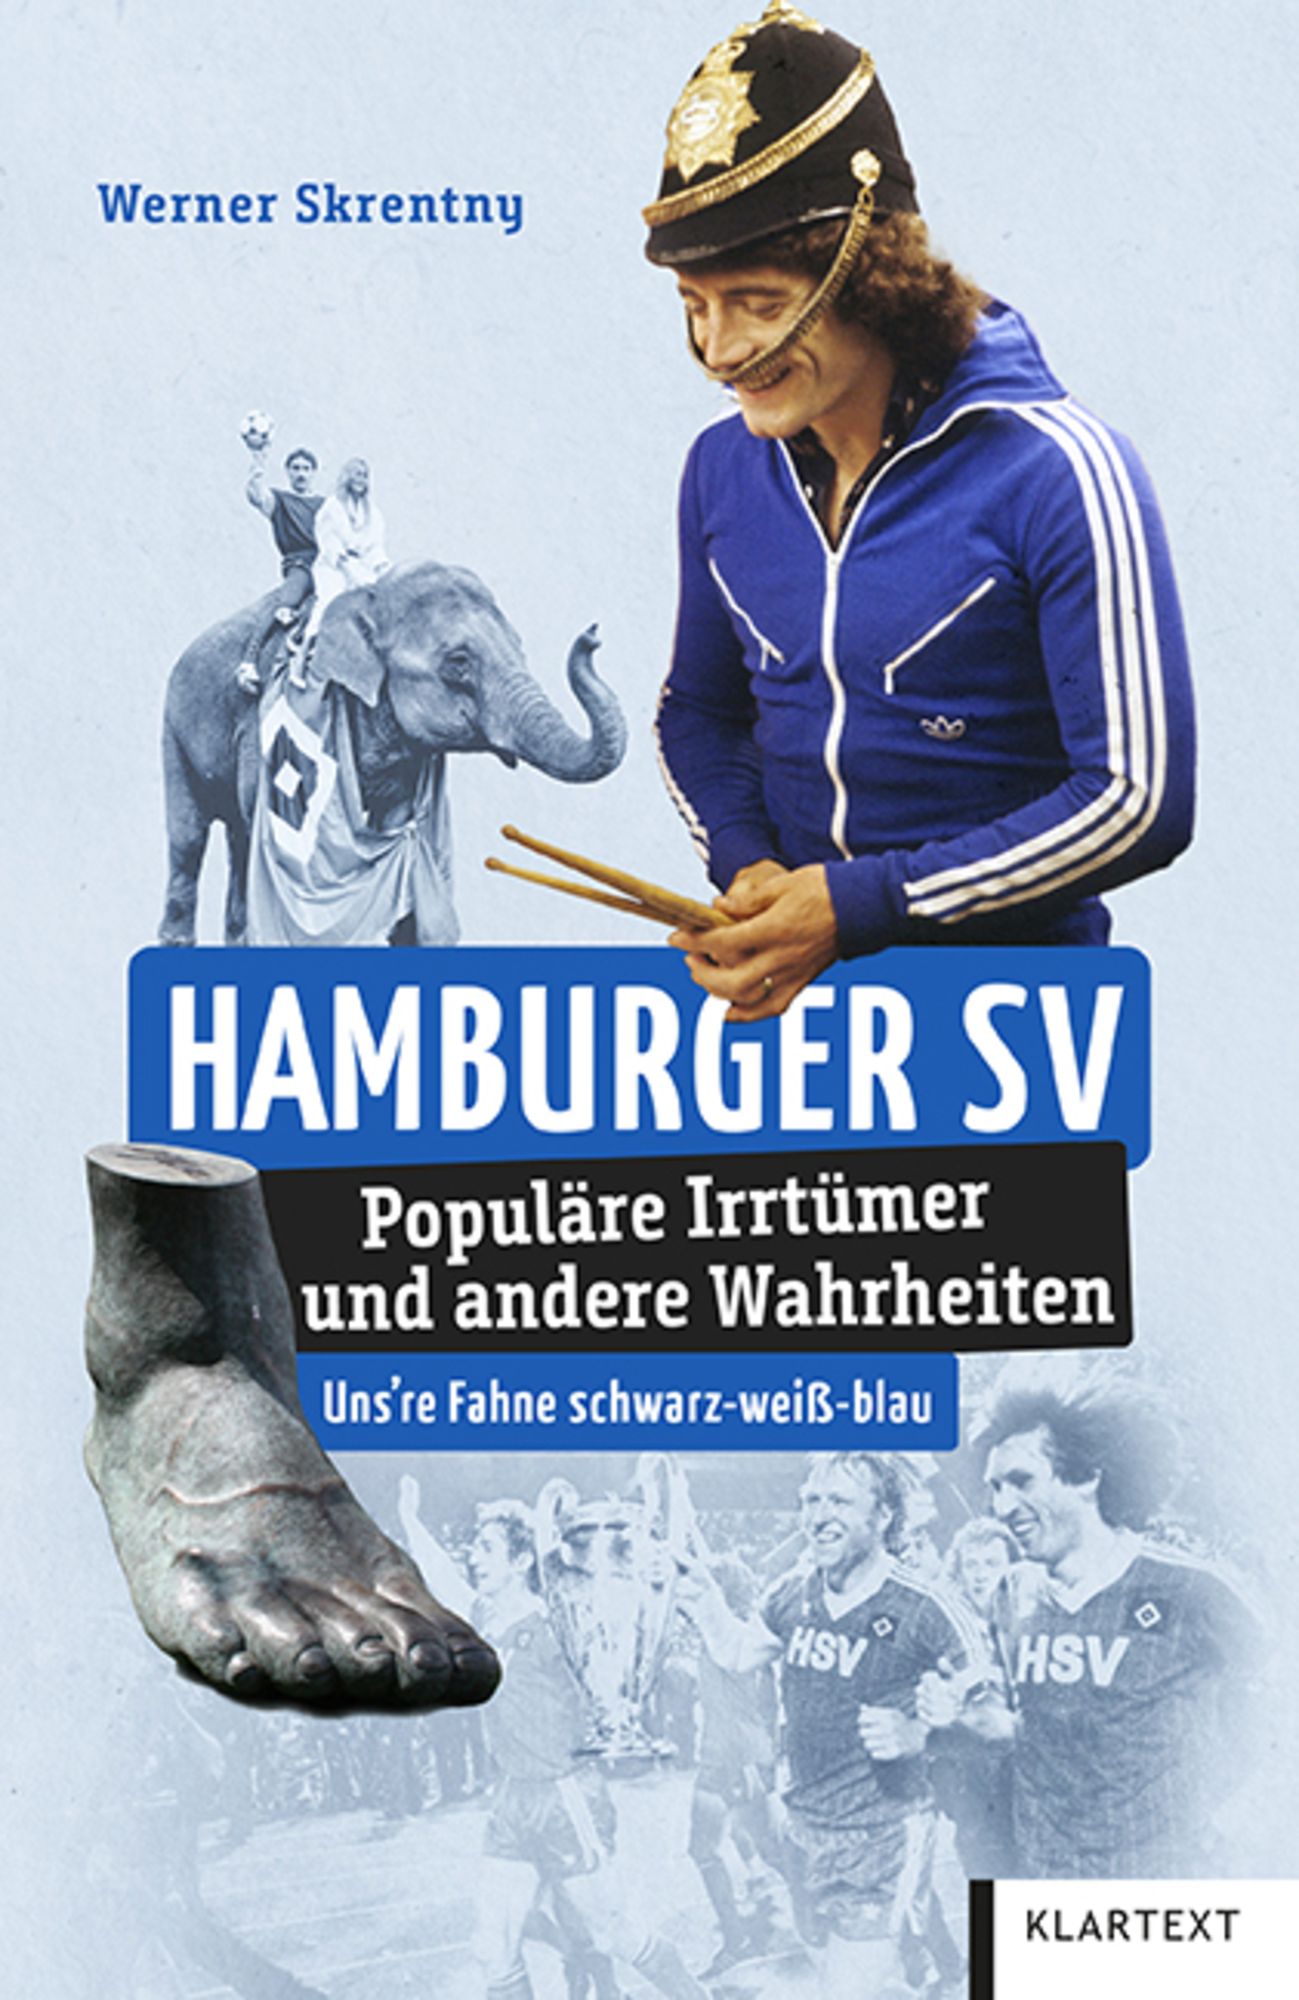 Hamburger SV' von 'Werner Skrentny' - Buch - '978-3-8375-2496-3